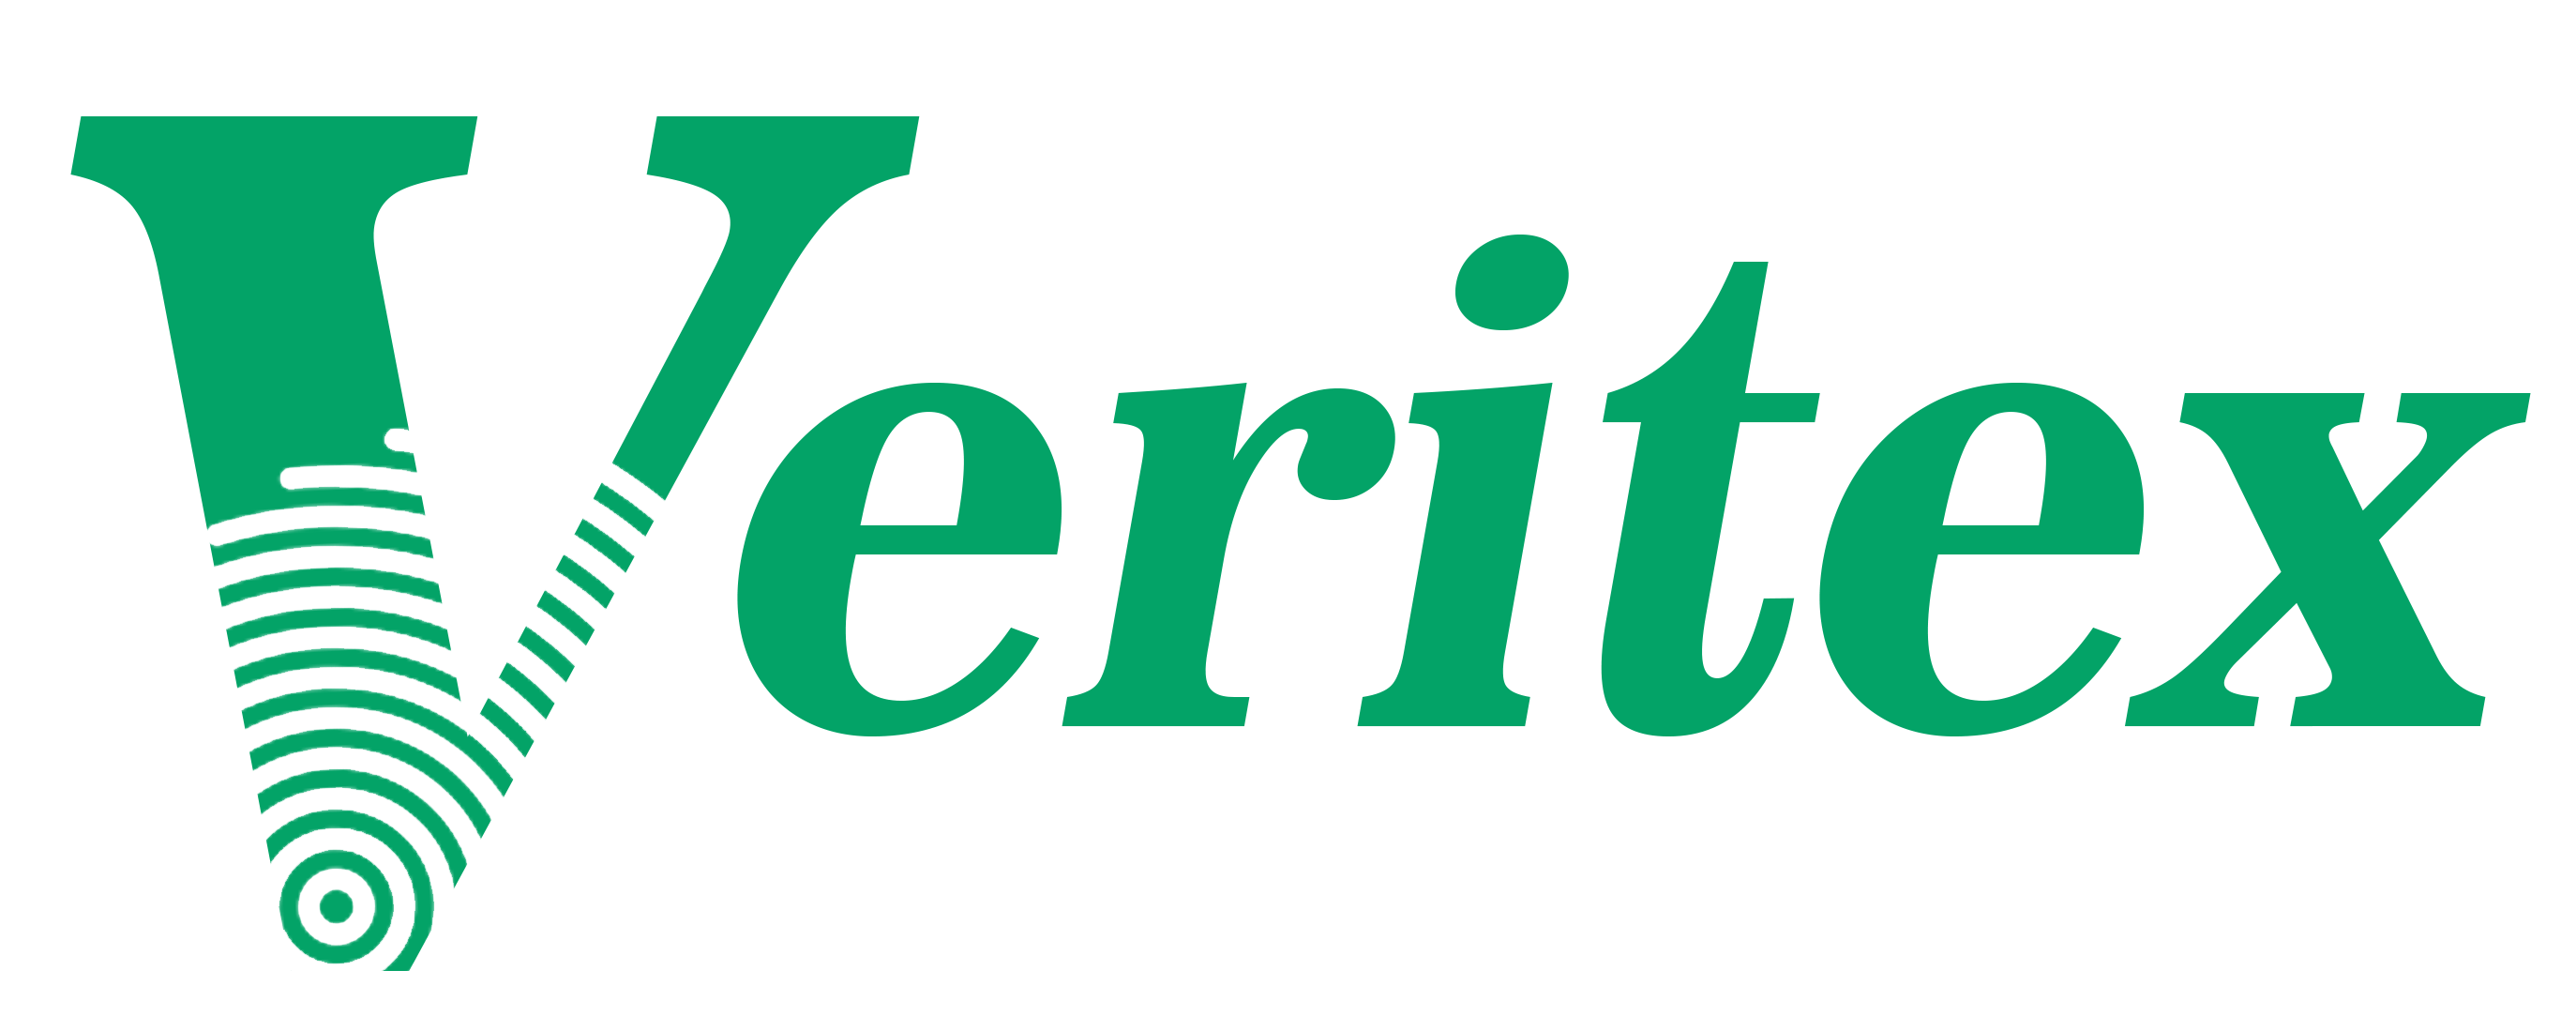 Veritex Logo - Veritex | Login